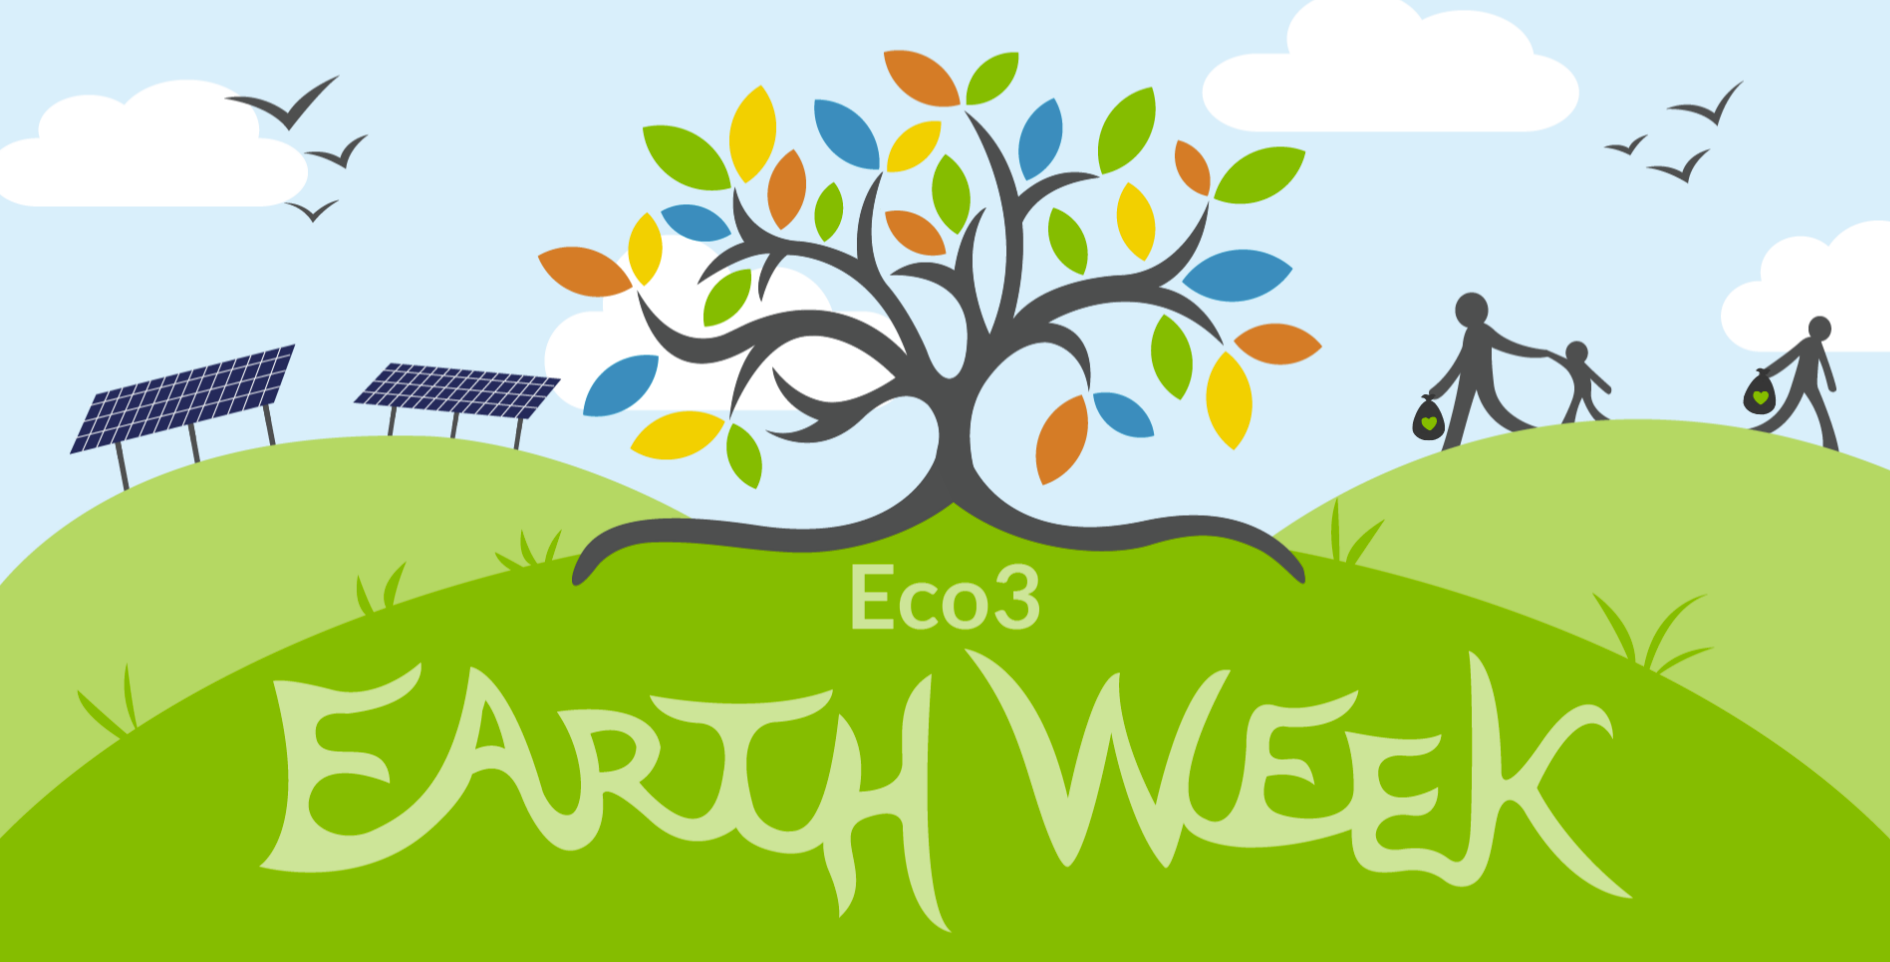 Eco3 Earth Week